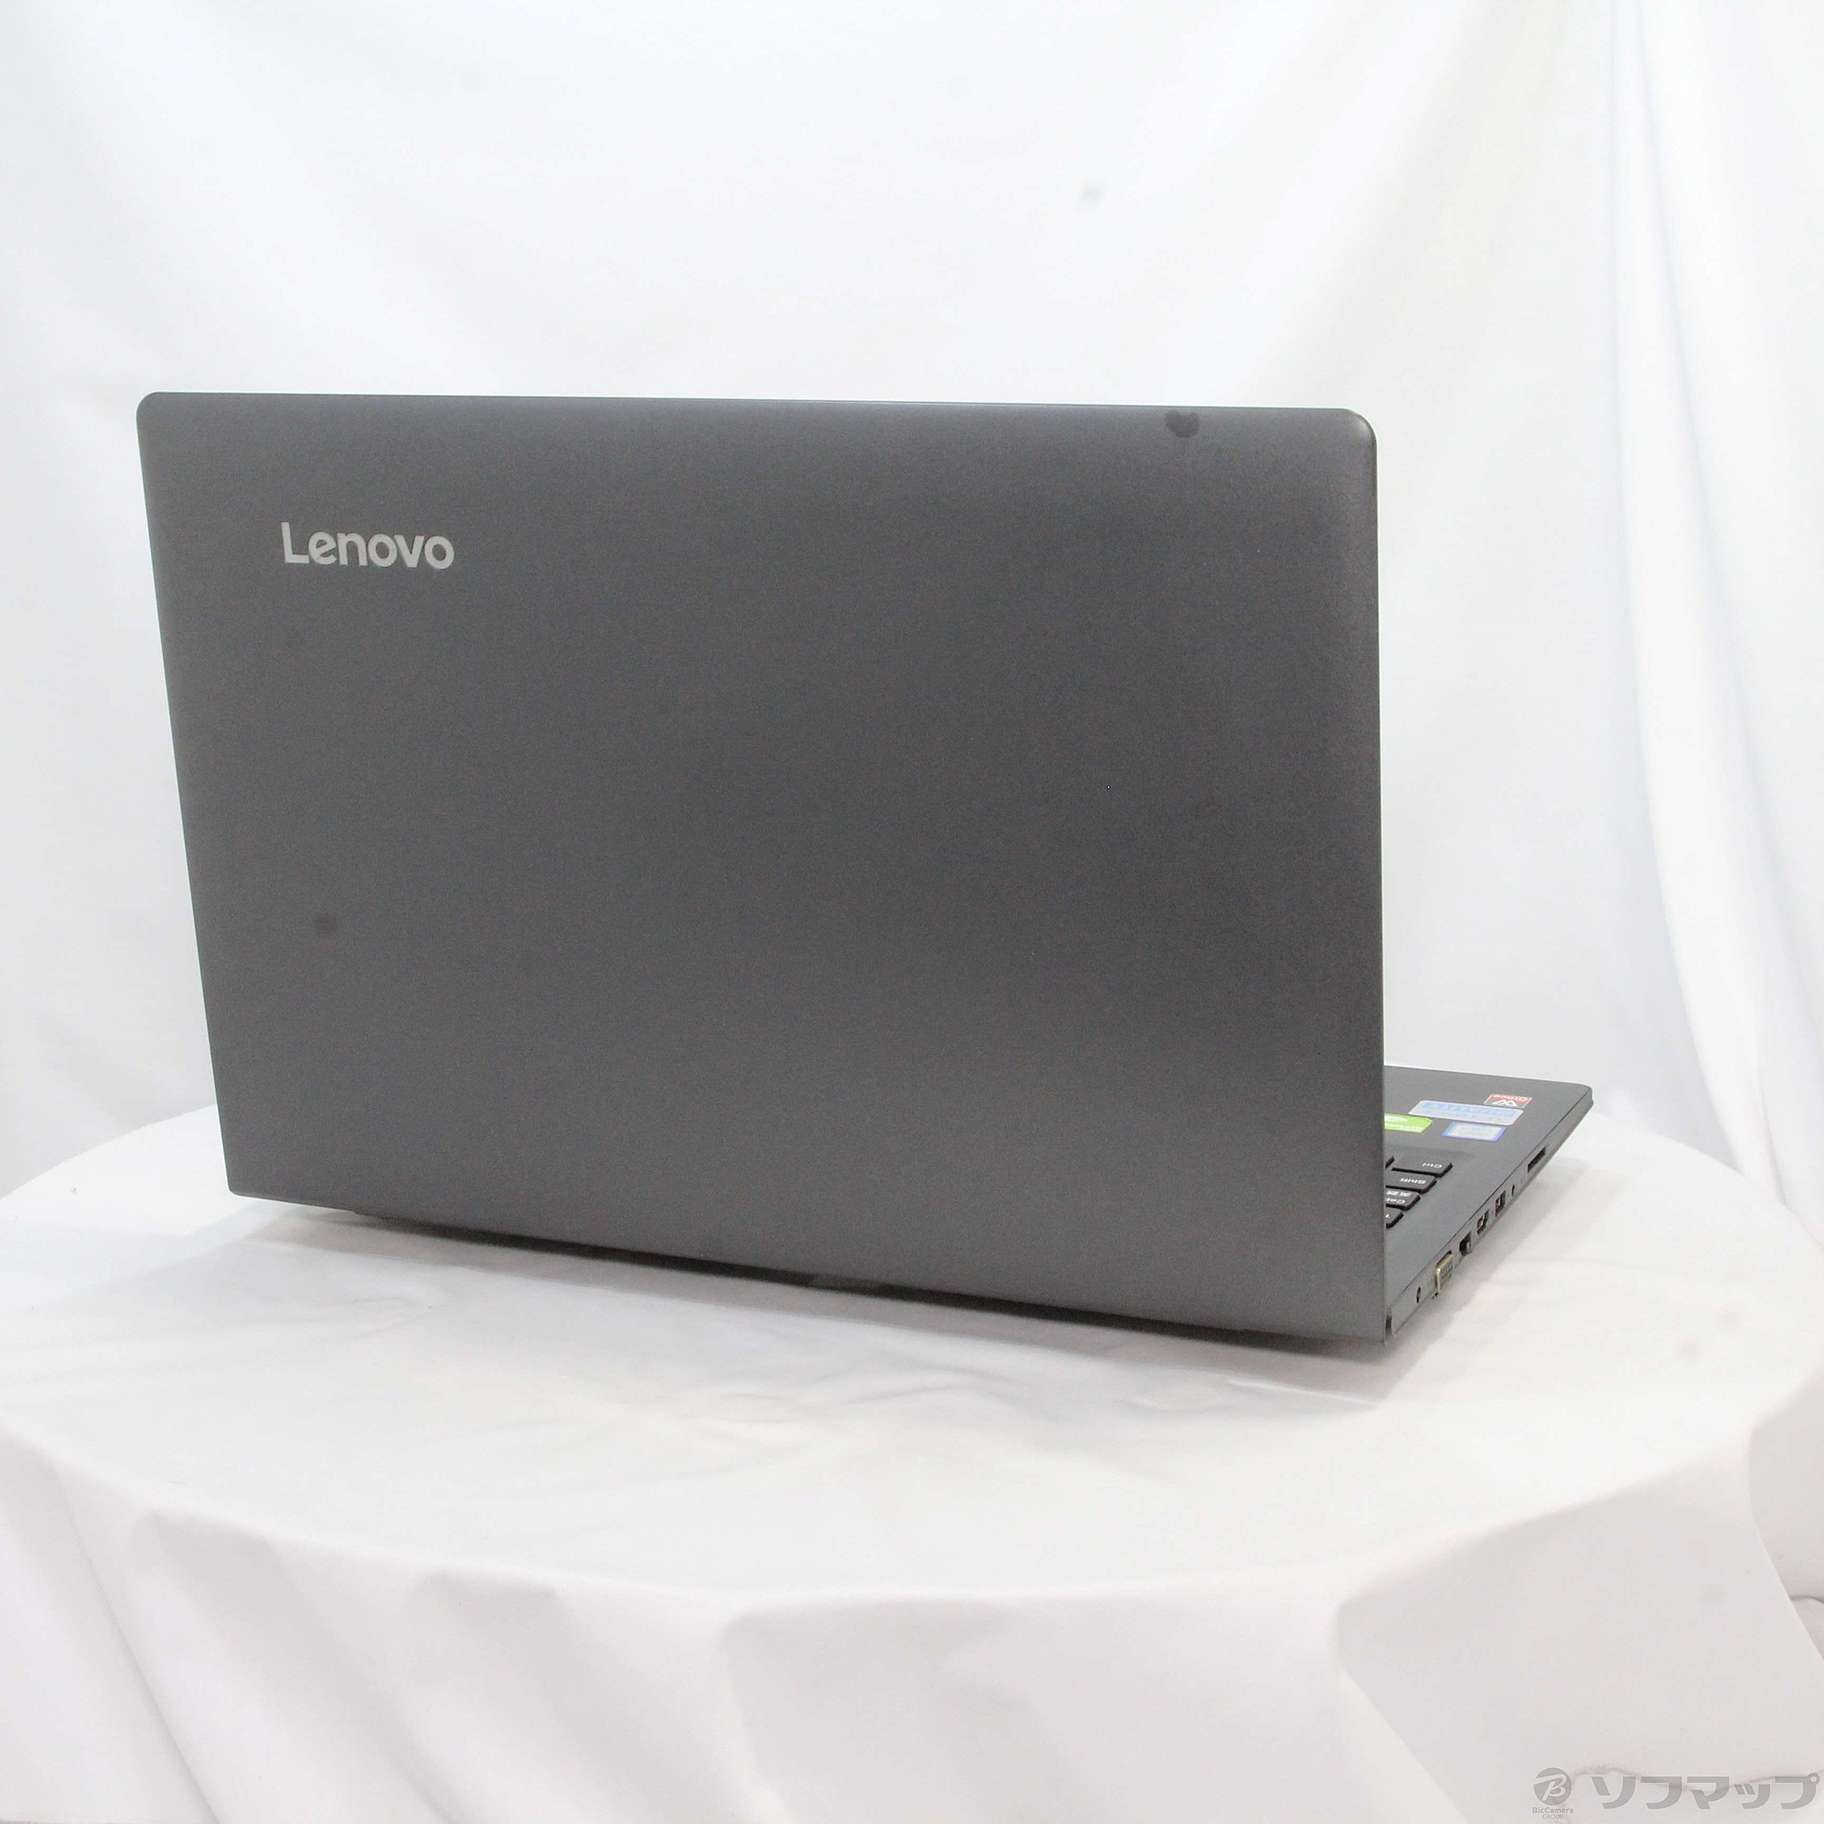 中古ノートパソコン Lenovo IdeaPad 510 Core i 買取り実績 11025円